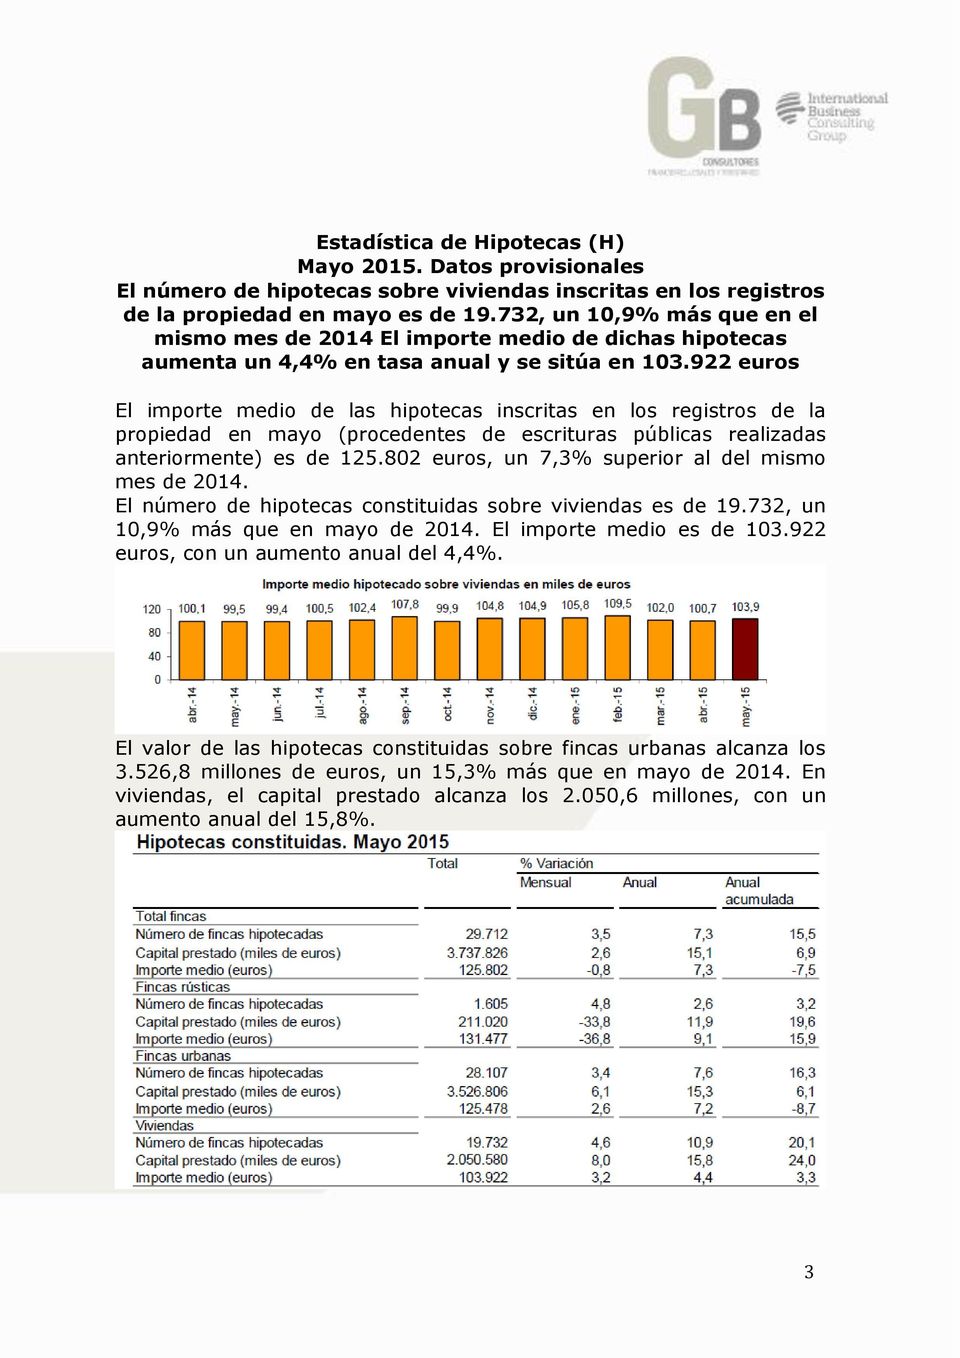 922 euros El importe medio de las hipotecas inscritas en los registros de la propiedad en mayo (procedentes de escrituras públicas realizadas anteriormente) es de 125.